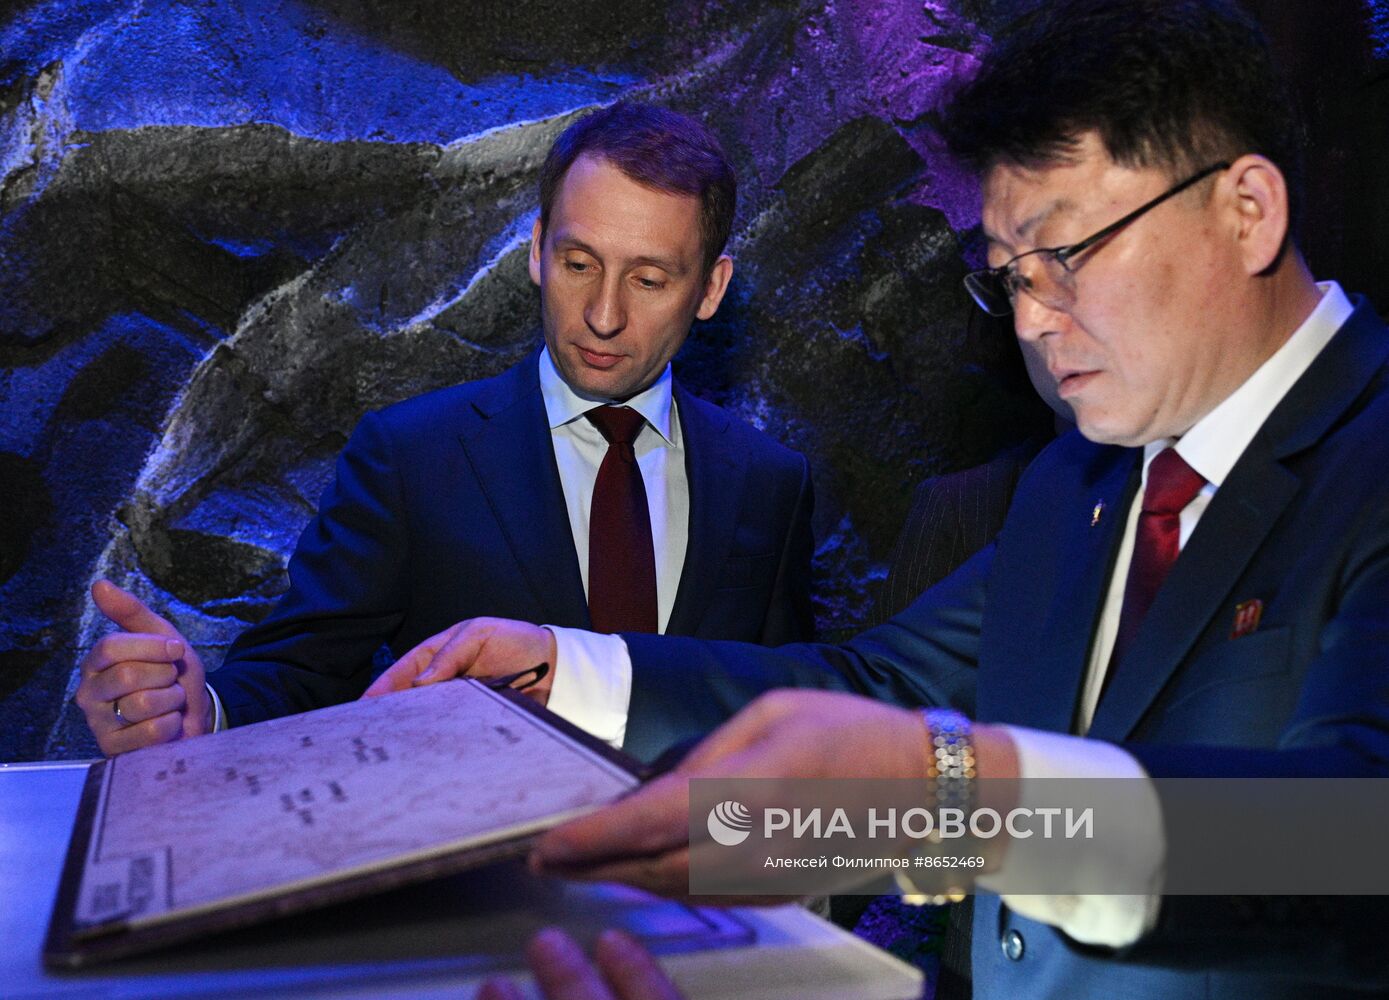 Выставка "Россия". Экскурсия делегации из Северной Кореи